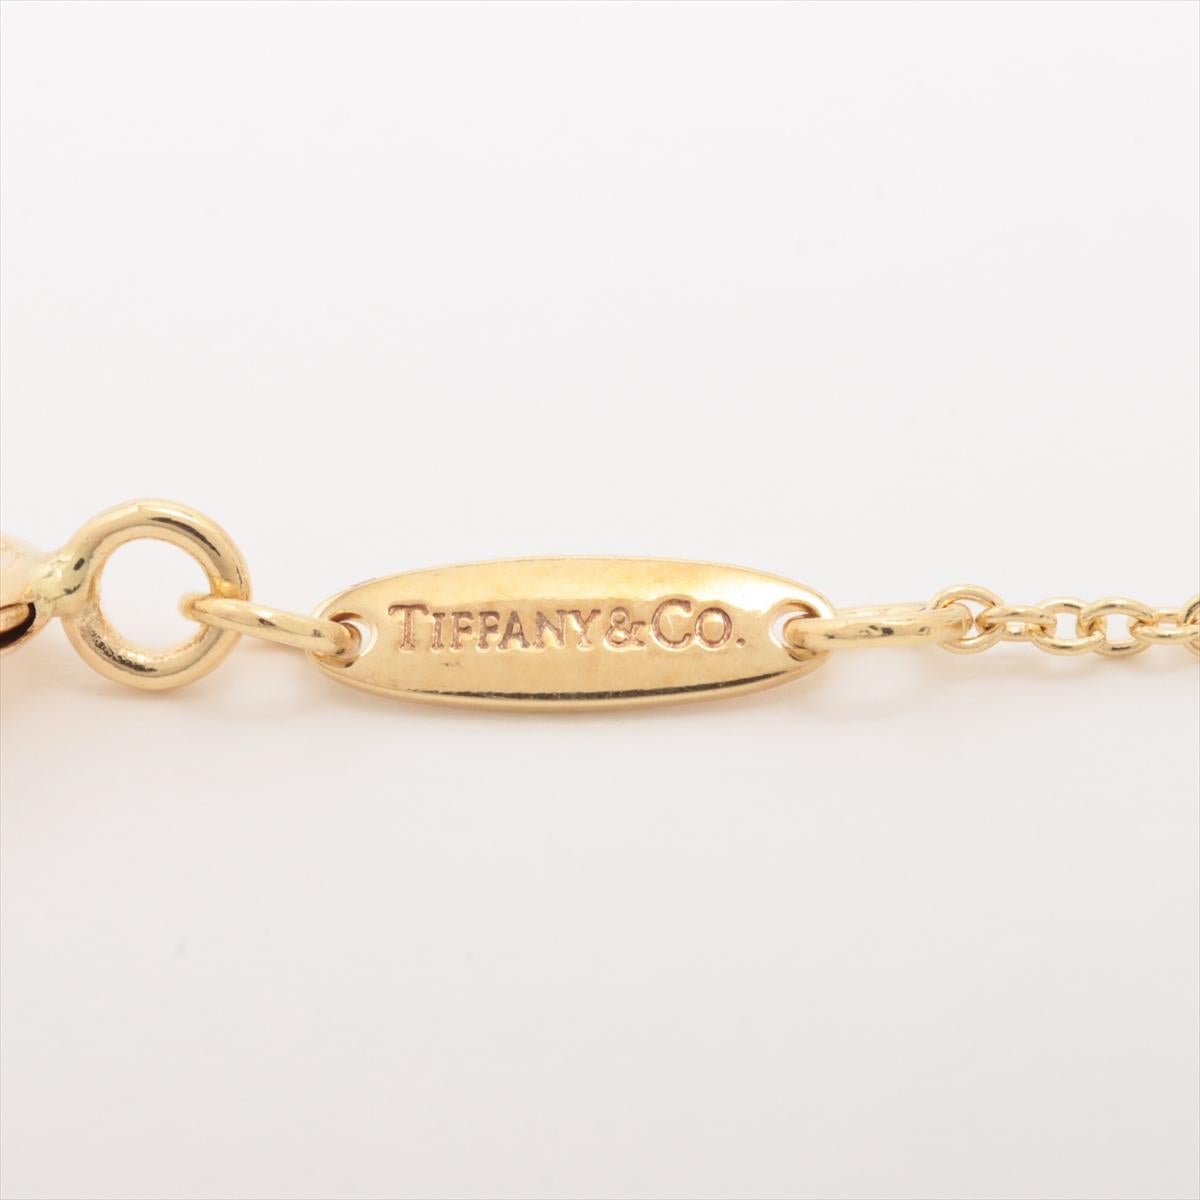 Marque : Tiffany 
Description : Collier Tiffany en forme de goutte 
Type de métal : 750YG/or jaune
Poids 5.0g
Condit : Anciennement utilisé ; petits signes d'usure
Boîte -  Non inclus
Papiers - Inclus
